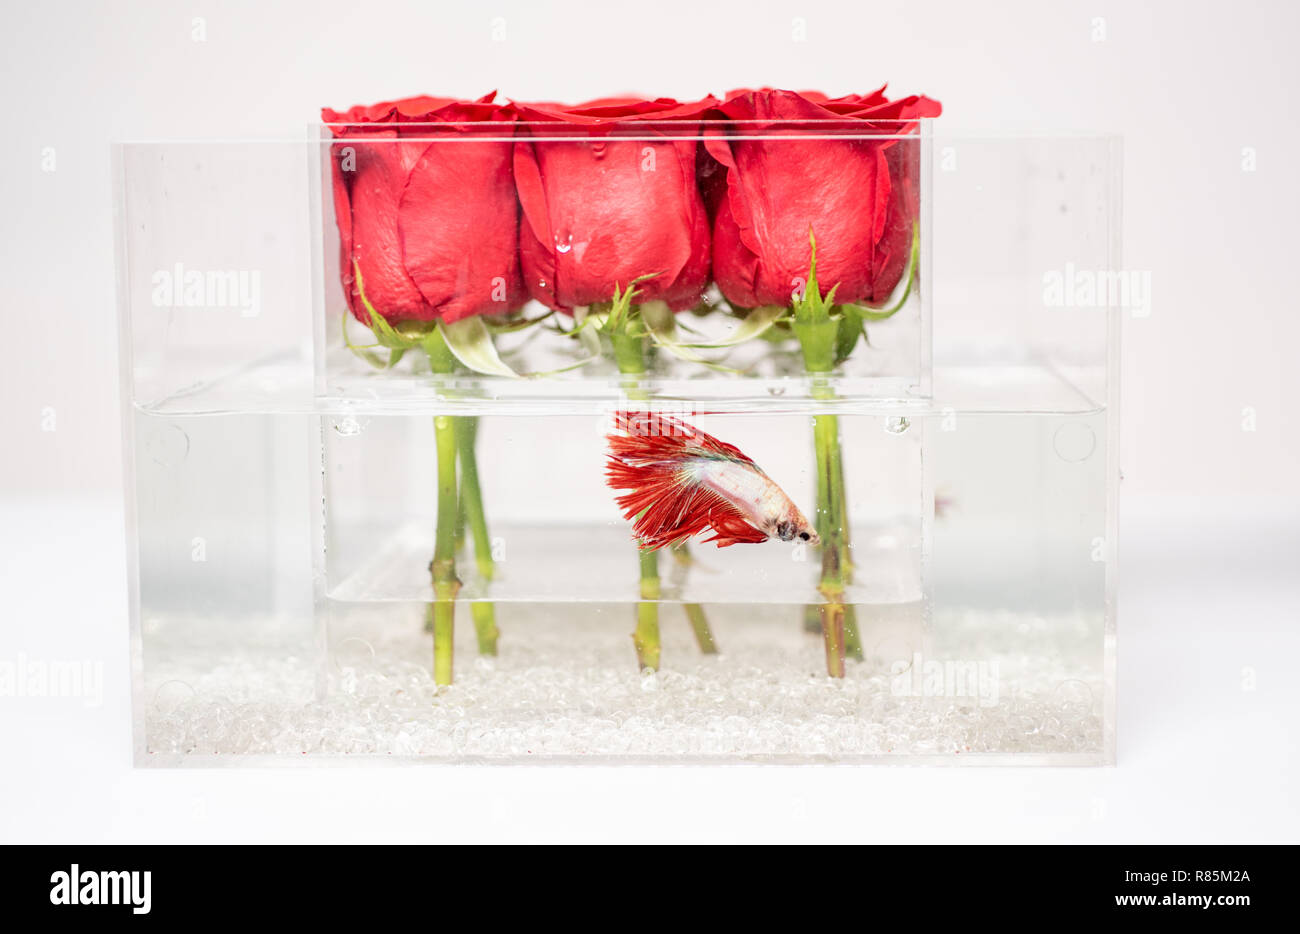 Il giorno di San Valentino presente. Acquario con pesci e le rose. Negozio  di fiori rosso bouquet di rose nella casella n. Design floreale. Amore e  passione. Sentire la passione. pesce rosso